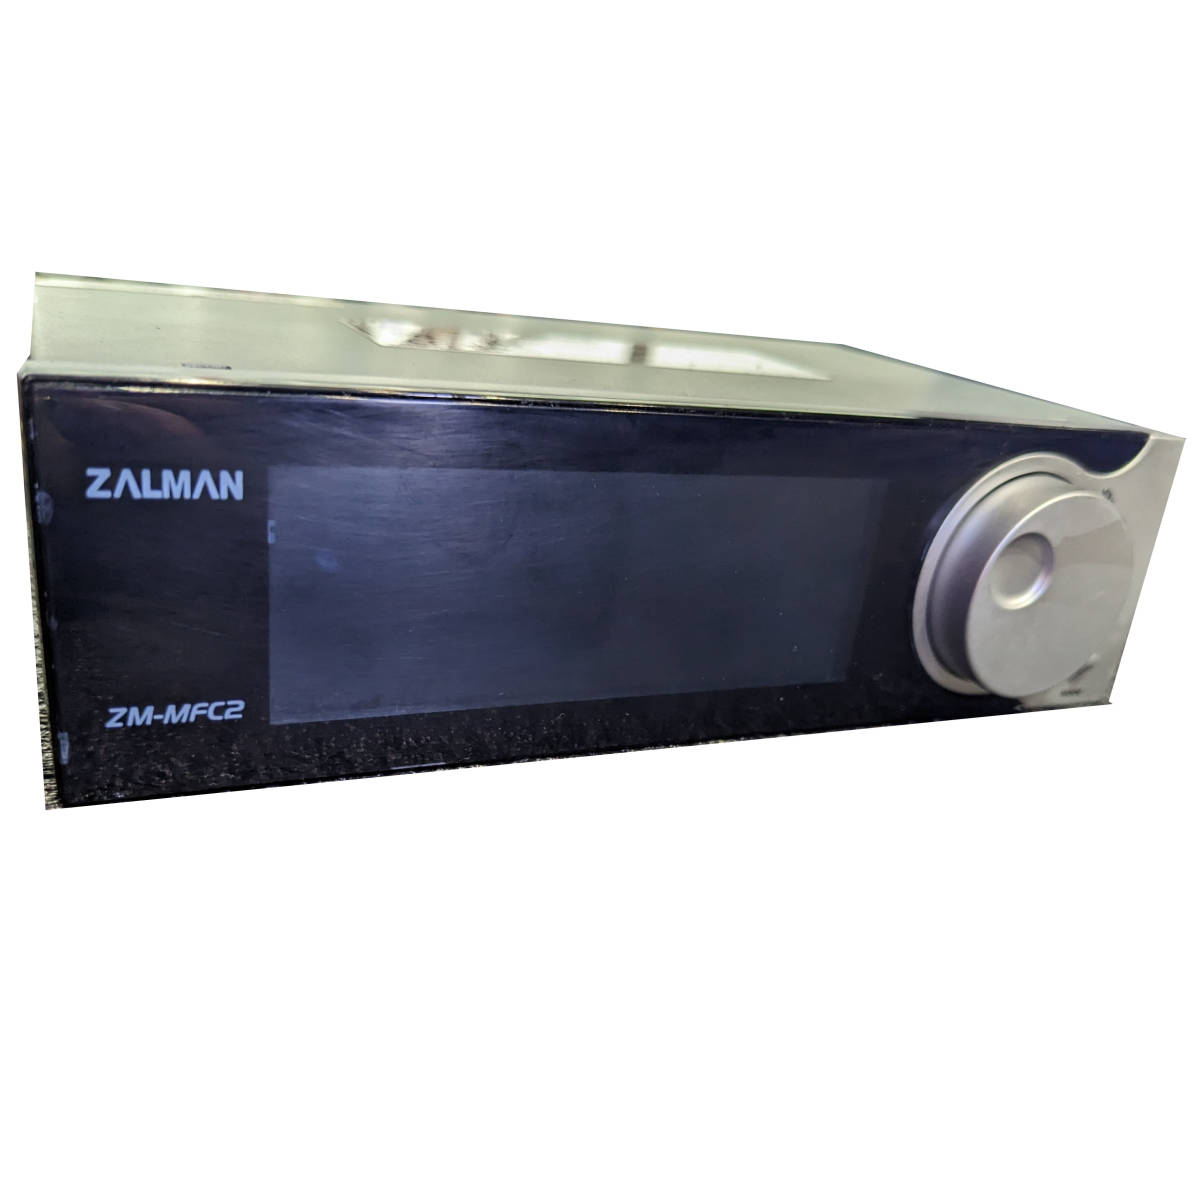 [ б/у ]ZALMAN ZM-MFC2 [5 дюймовый Bay для вентилятор темно синий ватт монитор ]